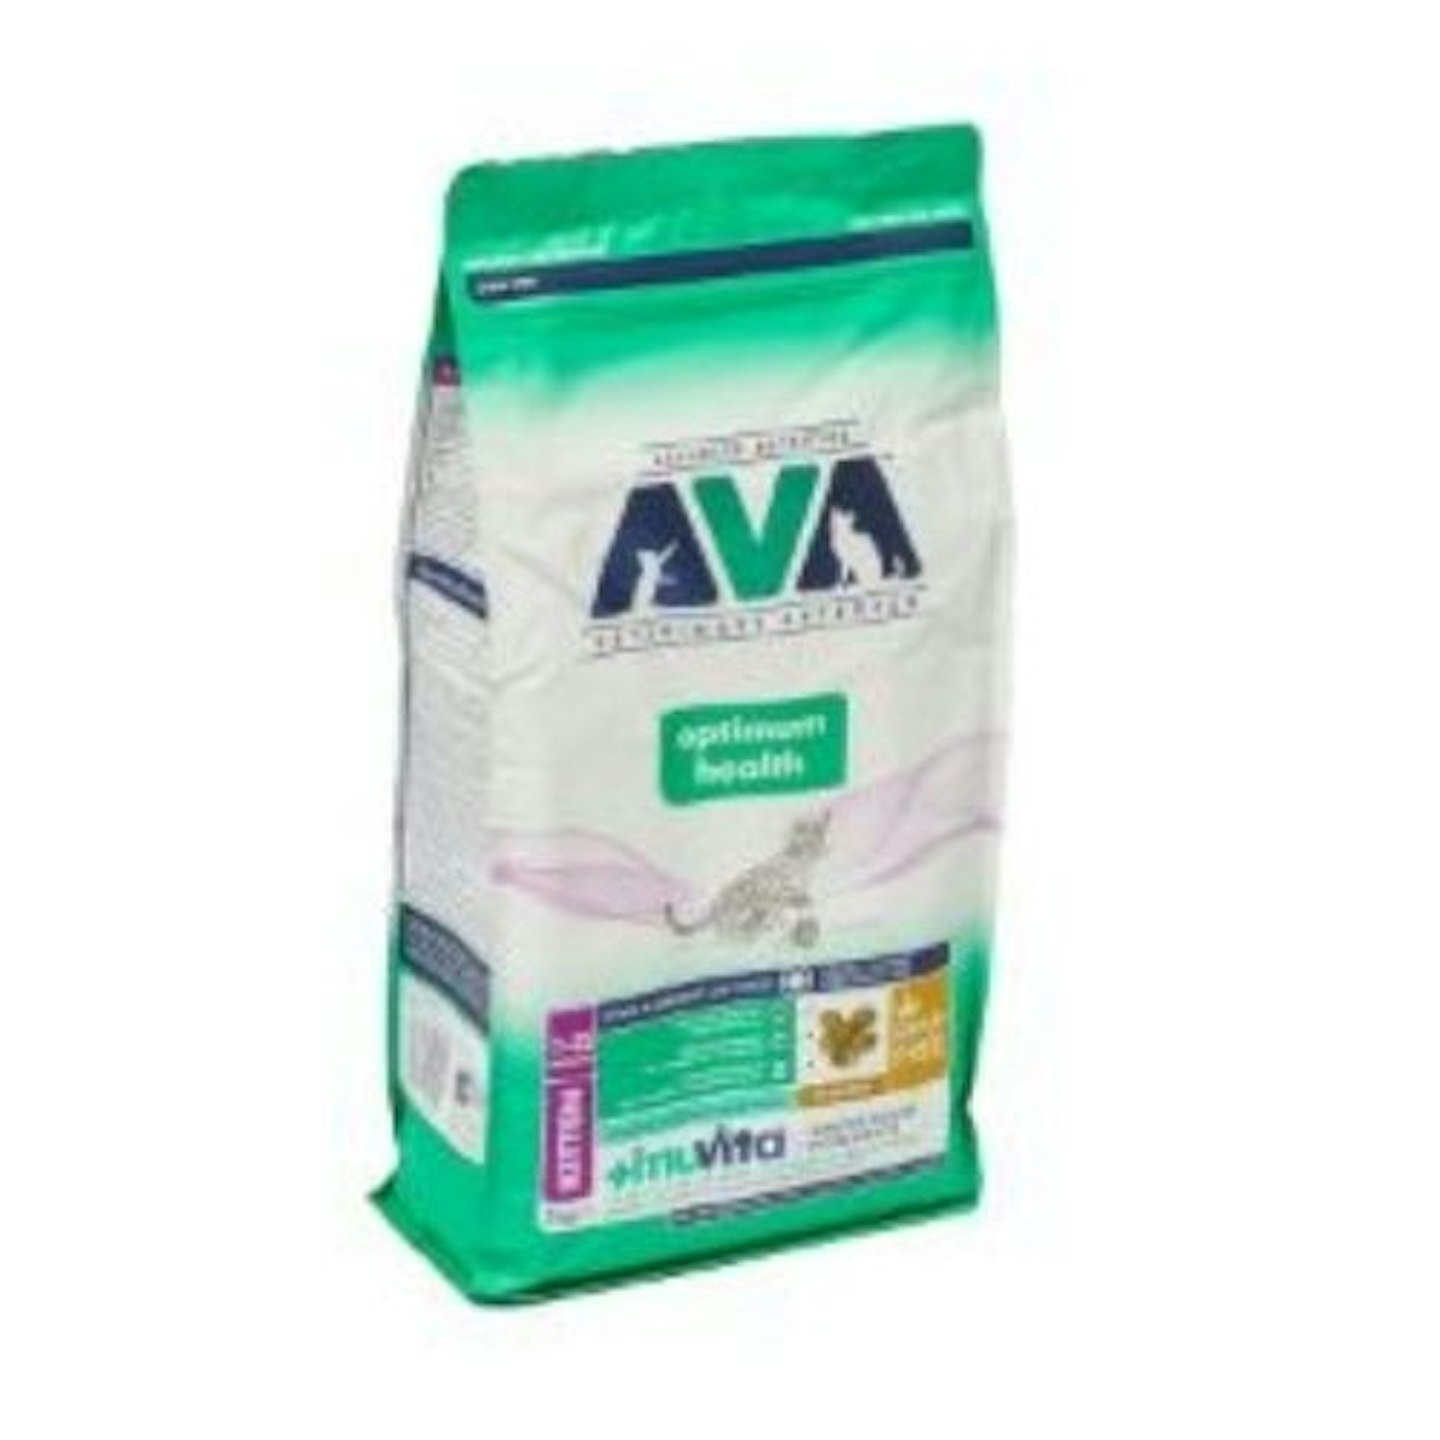 AVA Veterinary approved kitten dry food bag